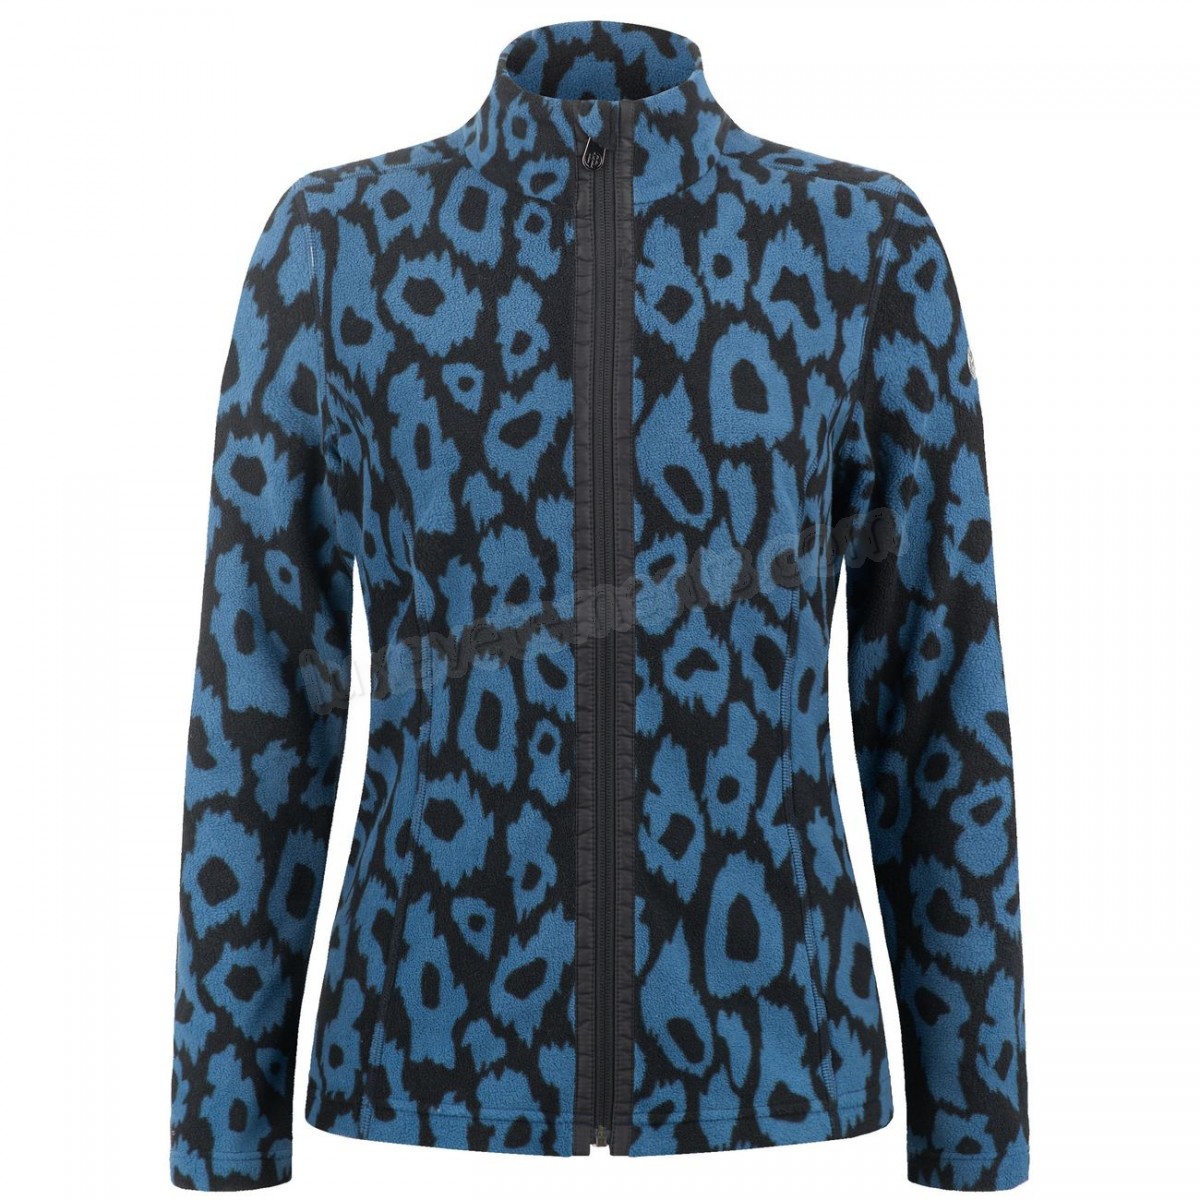 Poivre Blanc-Sports d'hiver femme POIVRE BLANC Veste Polaire Poivre Blanc Fleece Jacket 1500 Panther Blue Femme Vente en ligne - -0